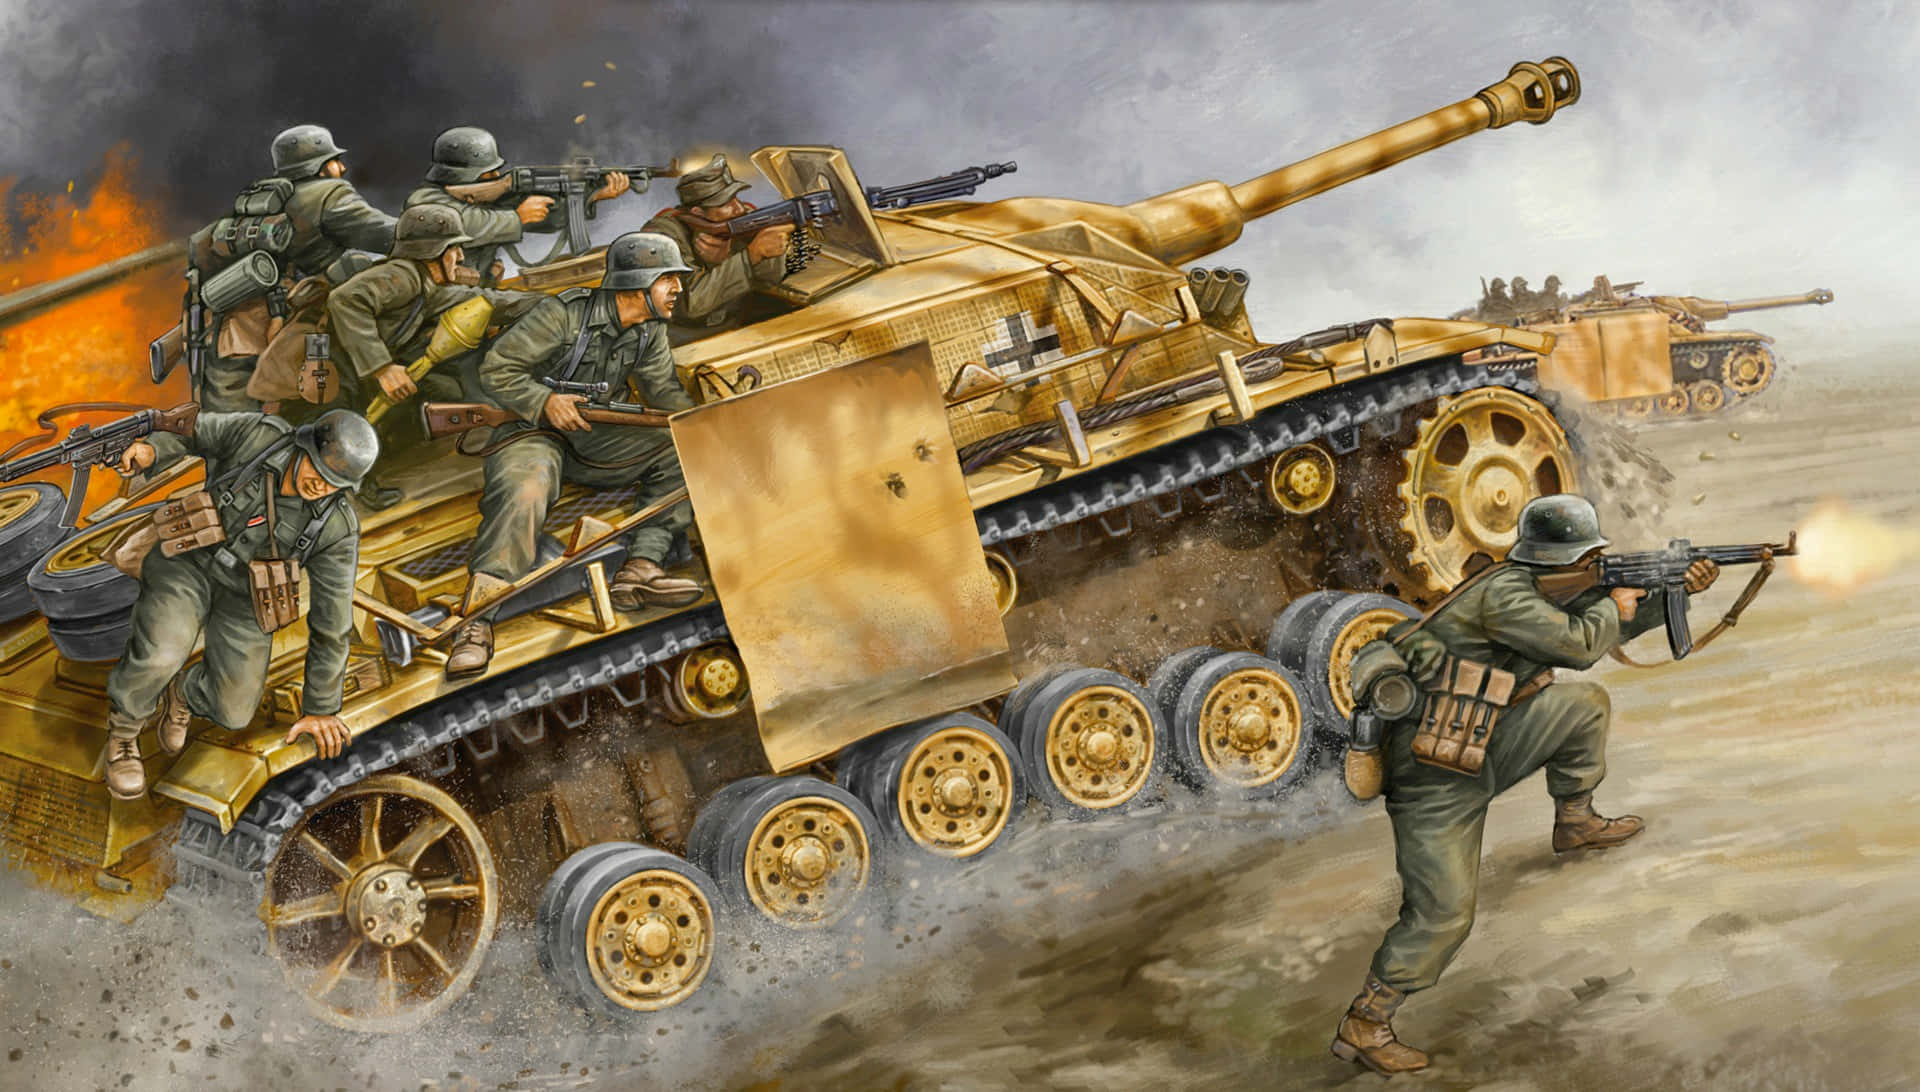 W W2 Tank Battle Scene Wallpaper